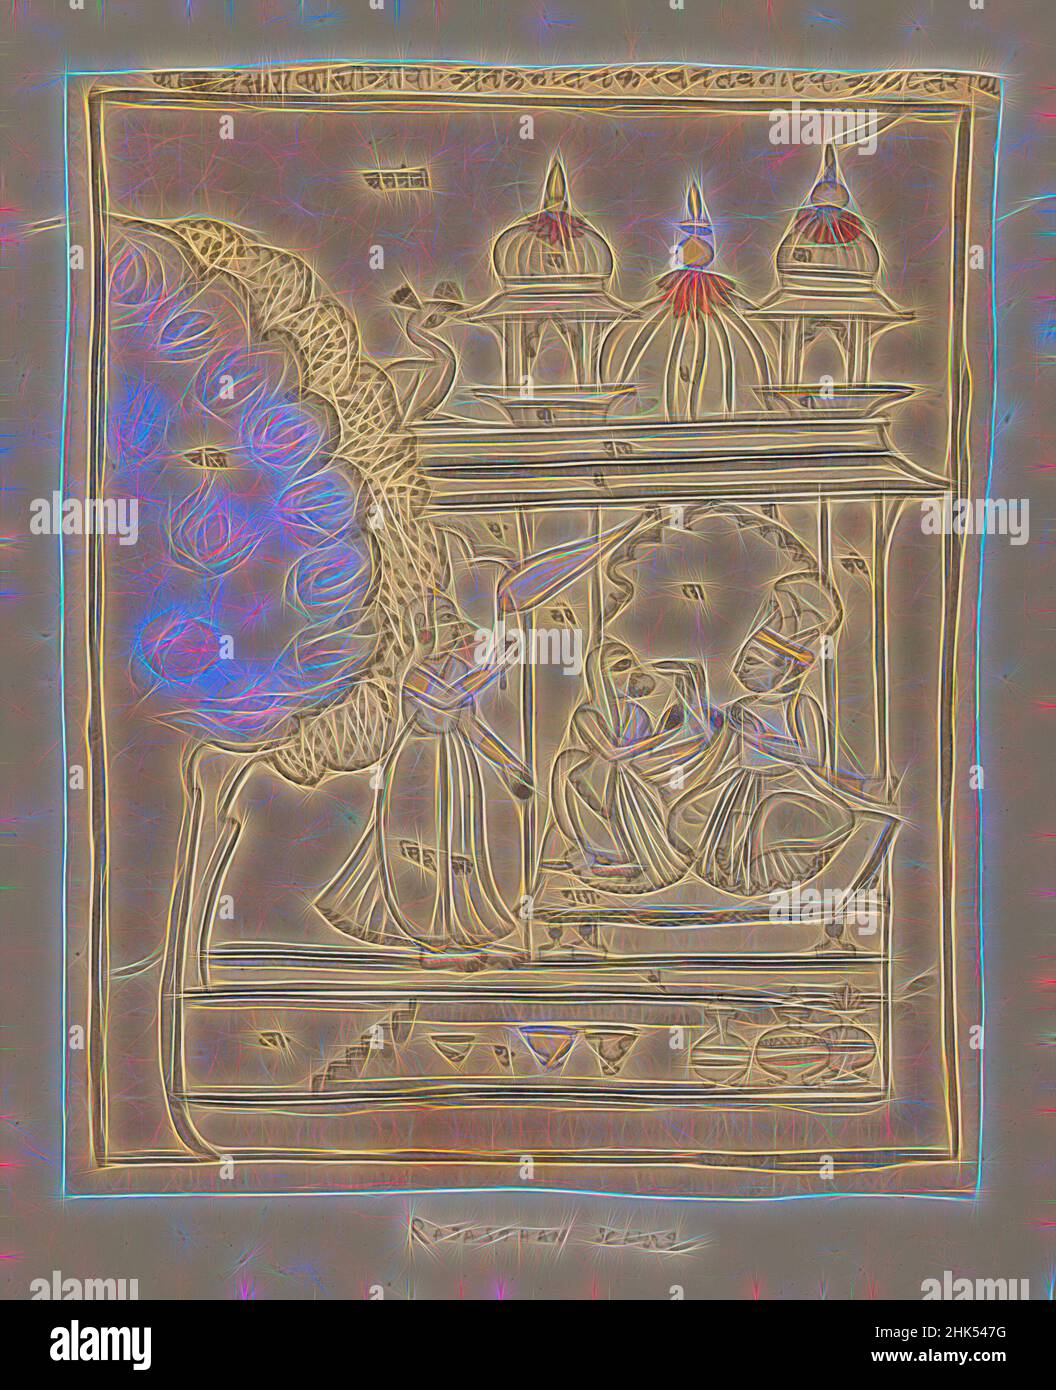 Ispirato da Malkosa Raga, disegno, indiano, inchiostro e colori sulla carta, Rajasthan, India, ca. 1750-1800, foglio: 9 5/16 x 7 5/8 pollici, 23,7 x 19,4 cm, reinventato da Artotop. L'arte classica reinventata con un tocco moderno. Design di calda e allegra luminosità e di raggi di luce. La fotografia si ispira al surrealismo e al futurismo, abbracciando l'energia dinamica della tecnologia moderna, del movimento, della velocità e rivoluzionando la cultura Foto Stock